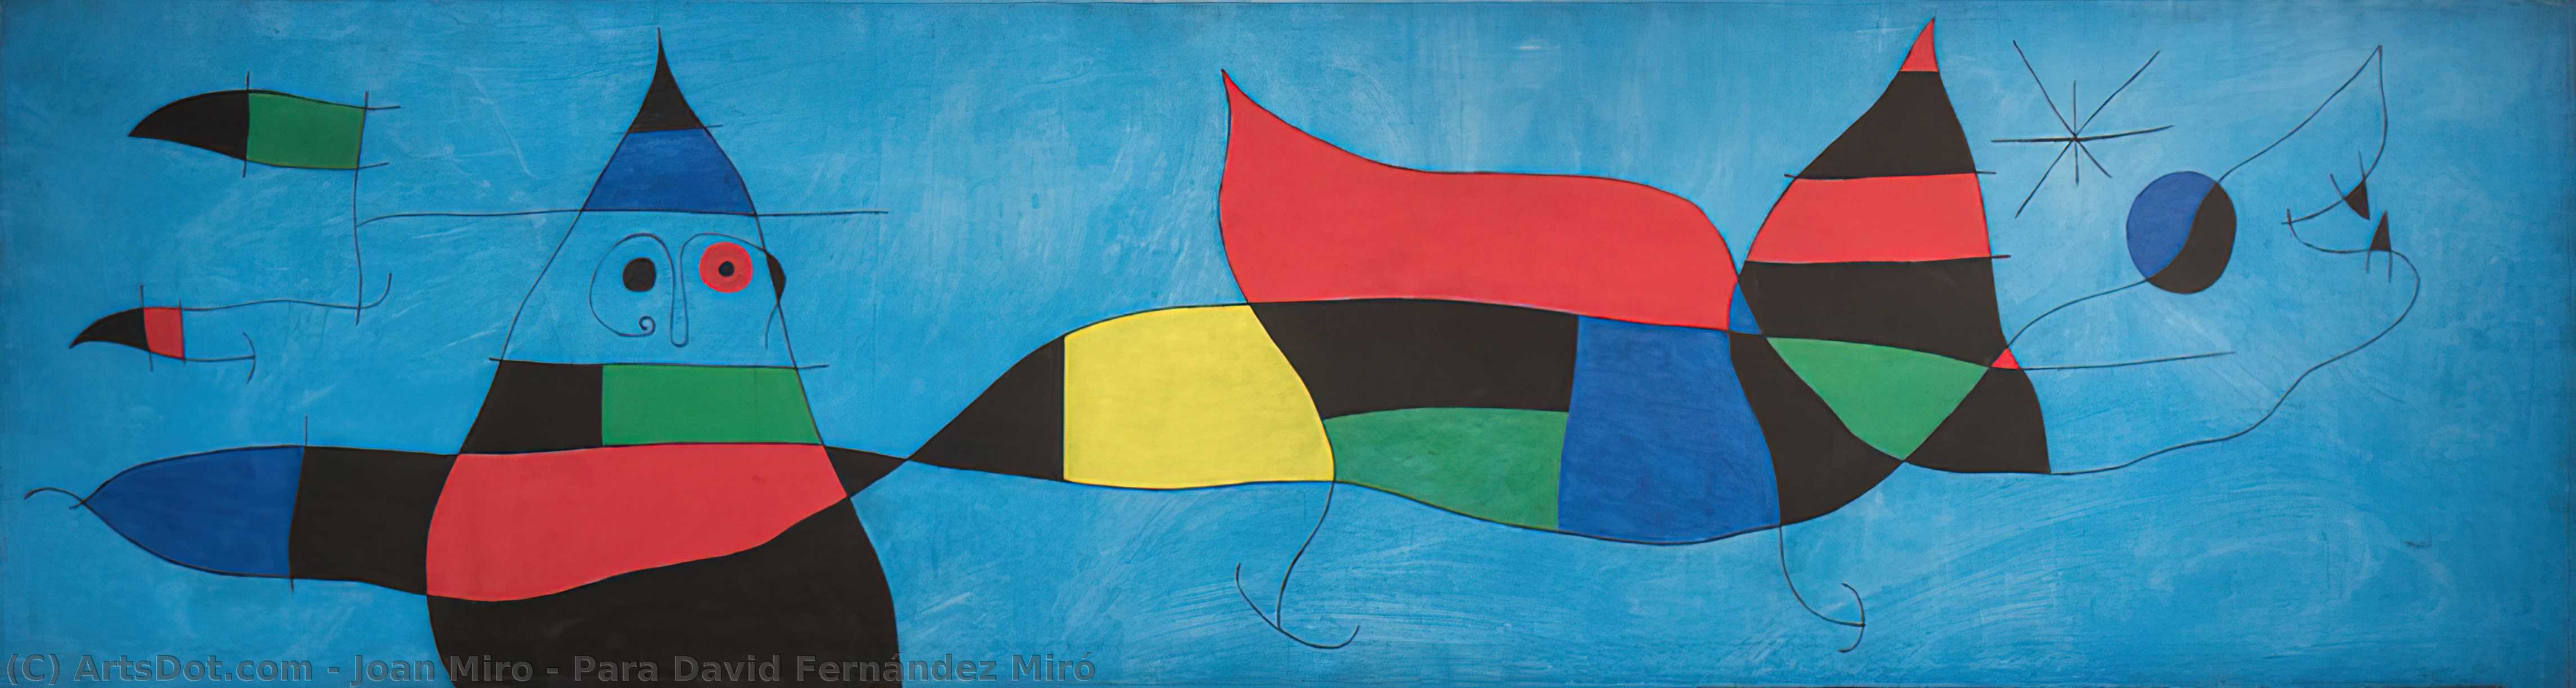 Wikioo.org – L'Encyclopédie des Beaux Arts - Peinture, Oeuvre de Joan Miro - para david fernández De miro